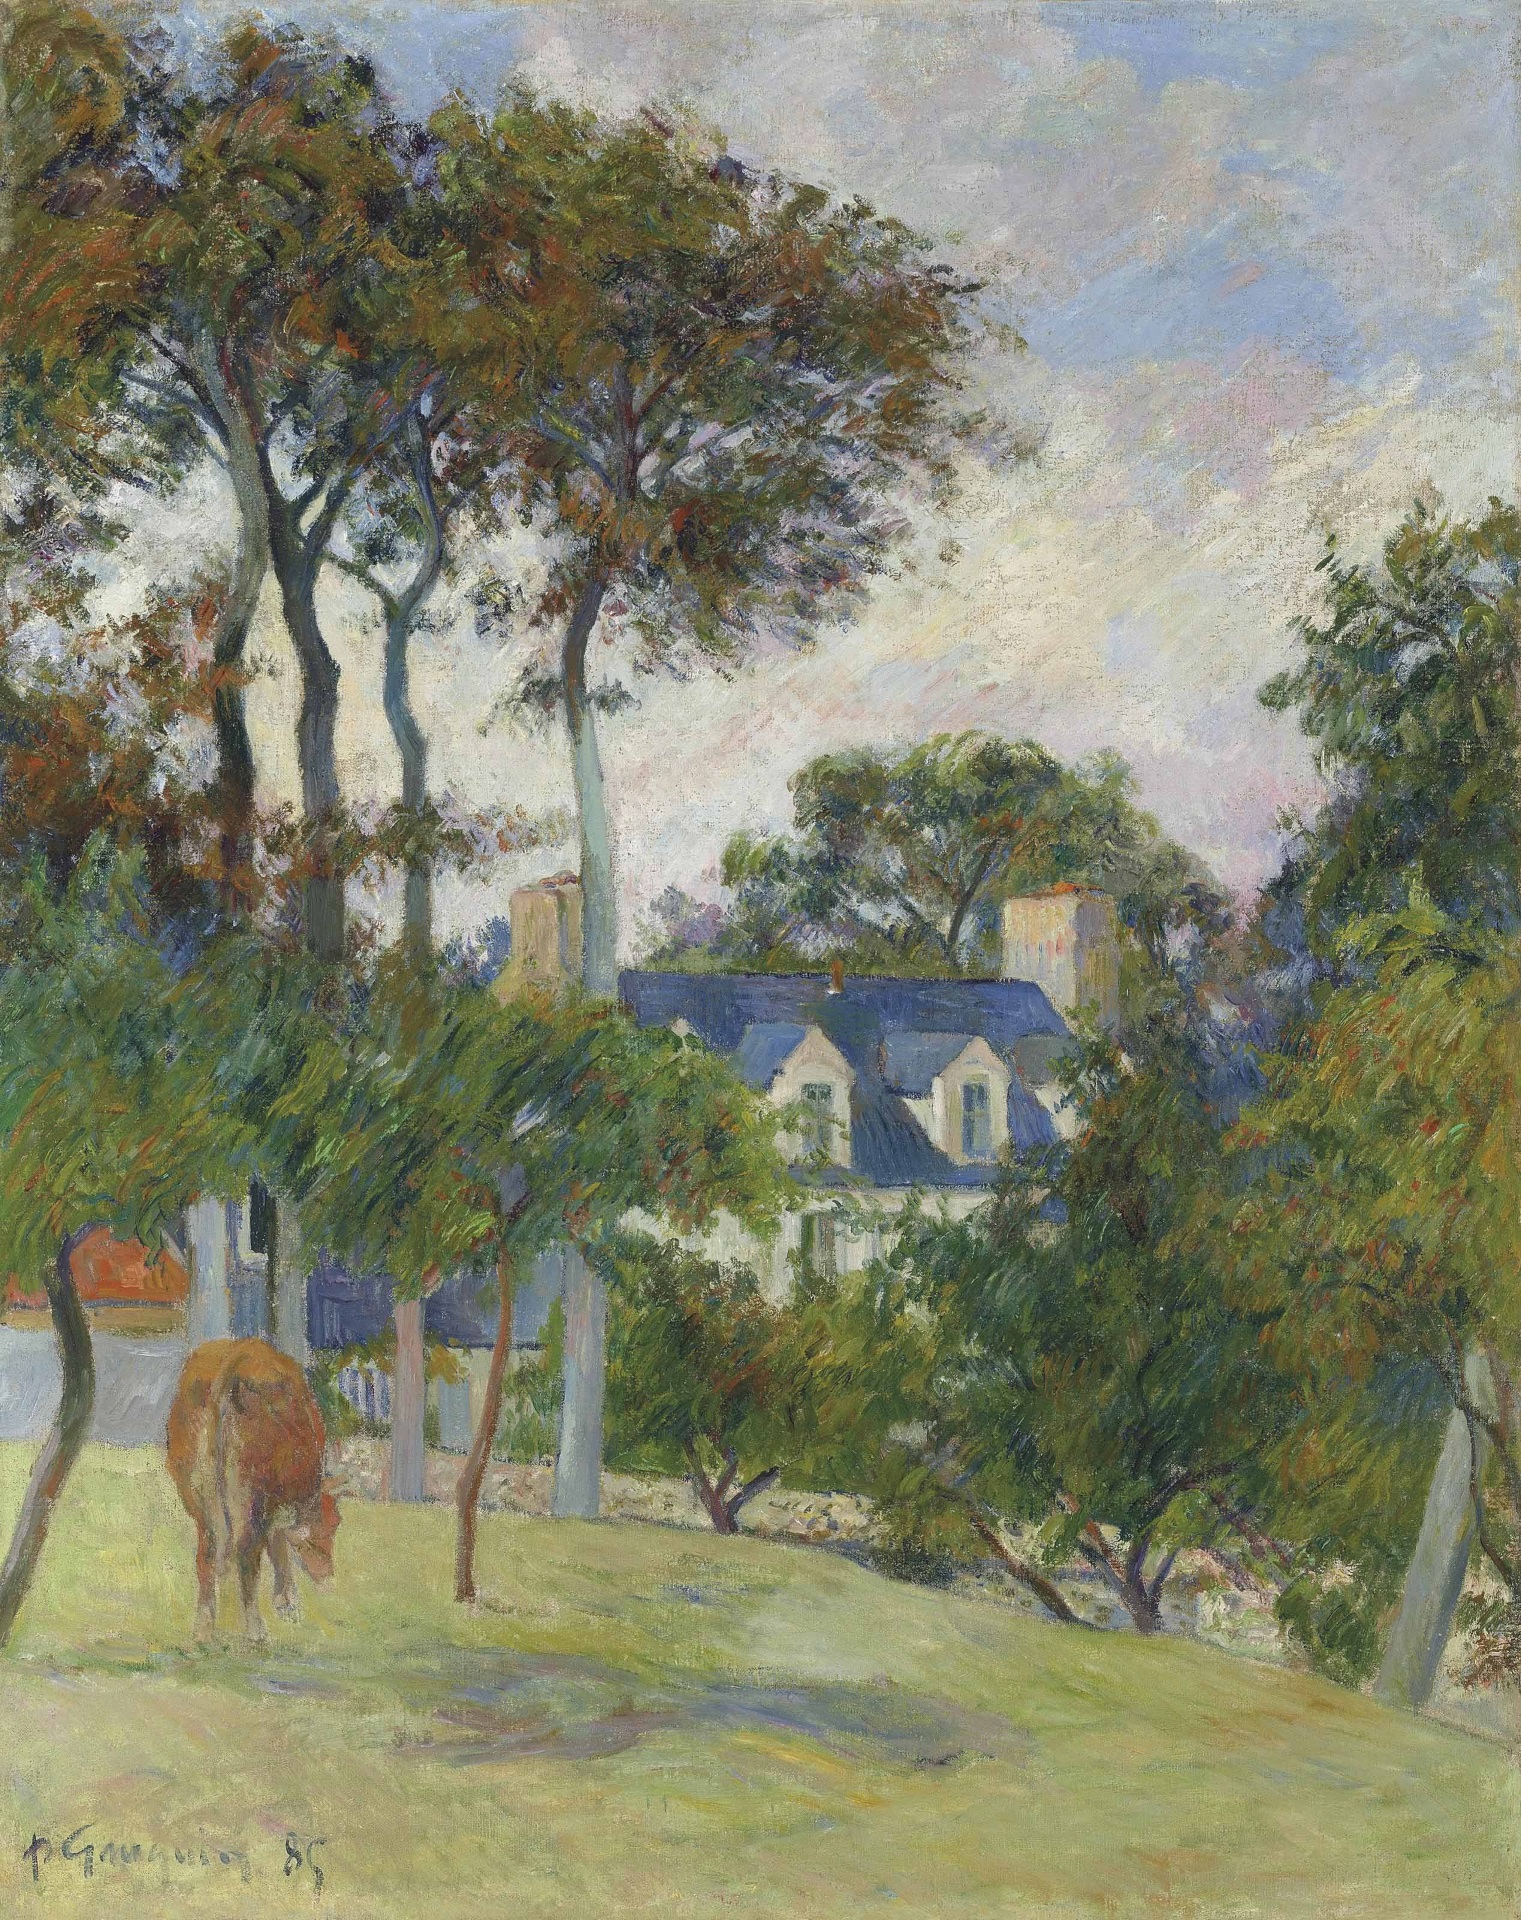 Paul Gauguin - La maison blanche 1885